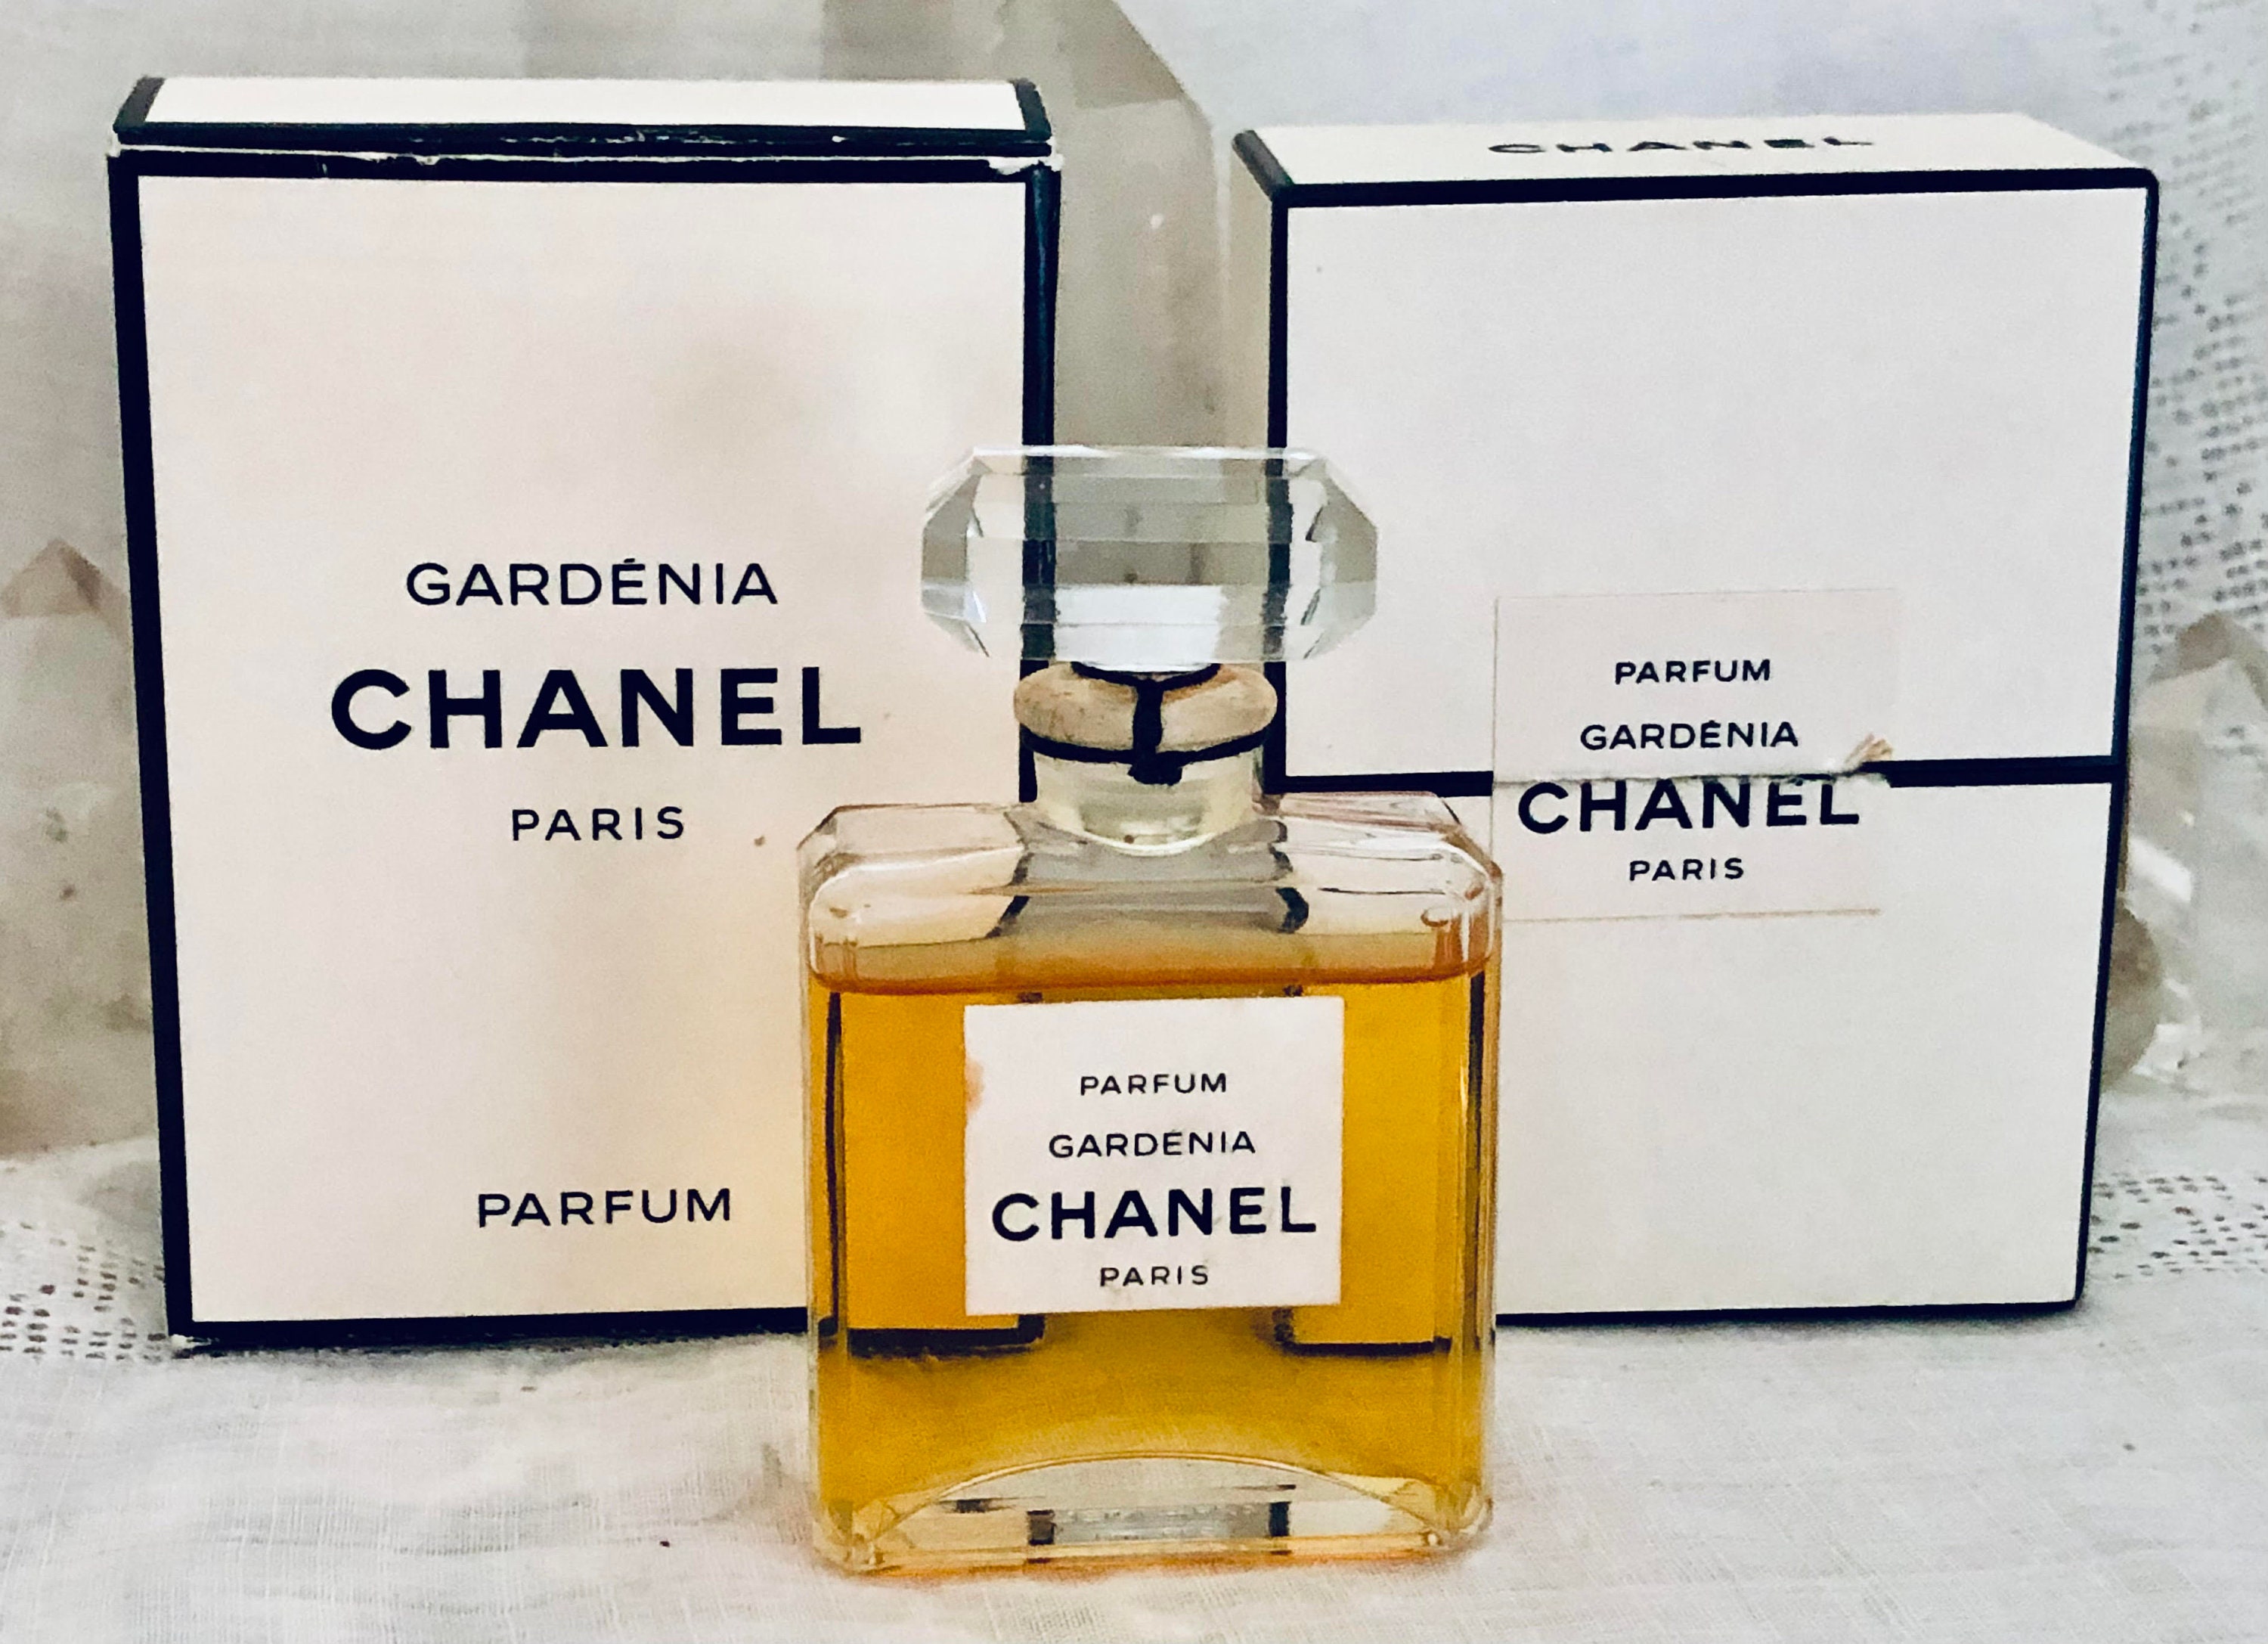 Chanel Gardénia Gardenia 30 Ml. or 1 Oz. Flacon Parfum -  Sweden